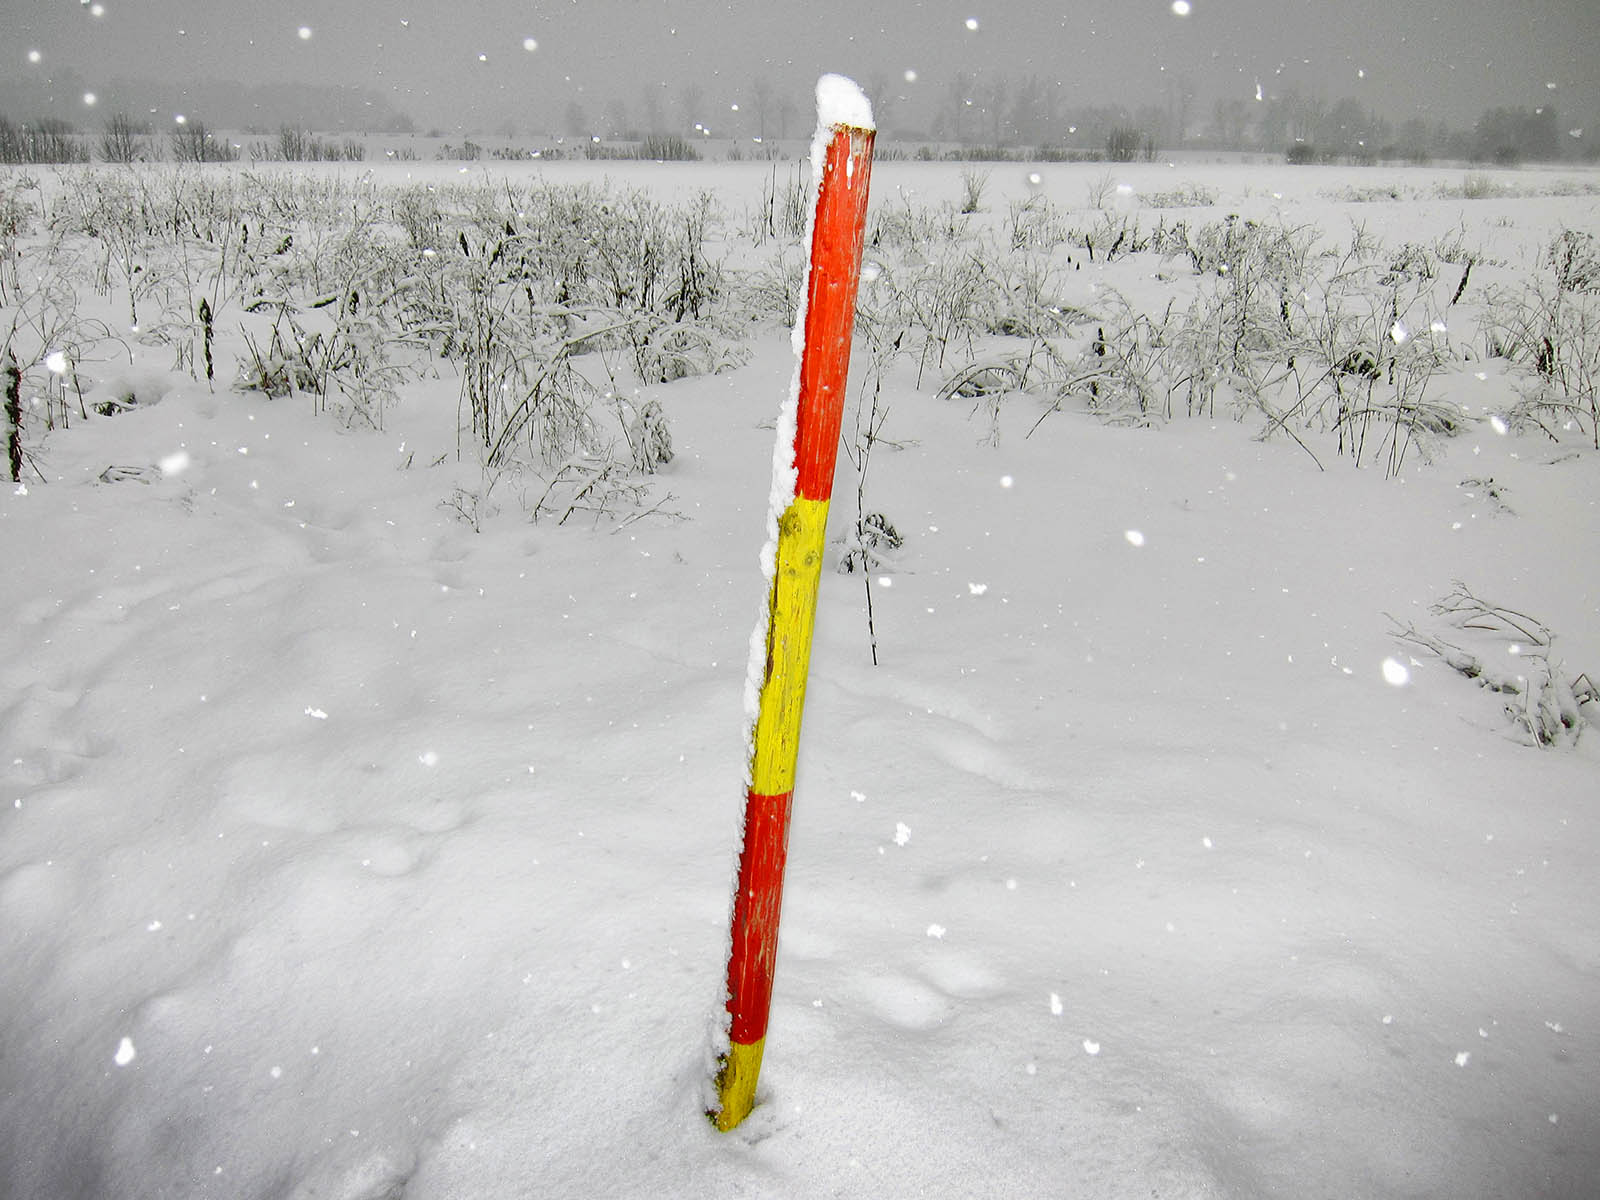 Slika, ki vsebuje besede na prostem, zima, zamrzovanje, snežni metež

Opis je samodejno ustvarjen